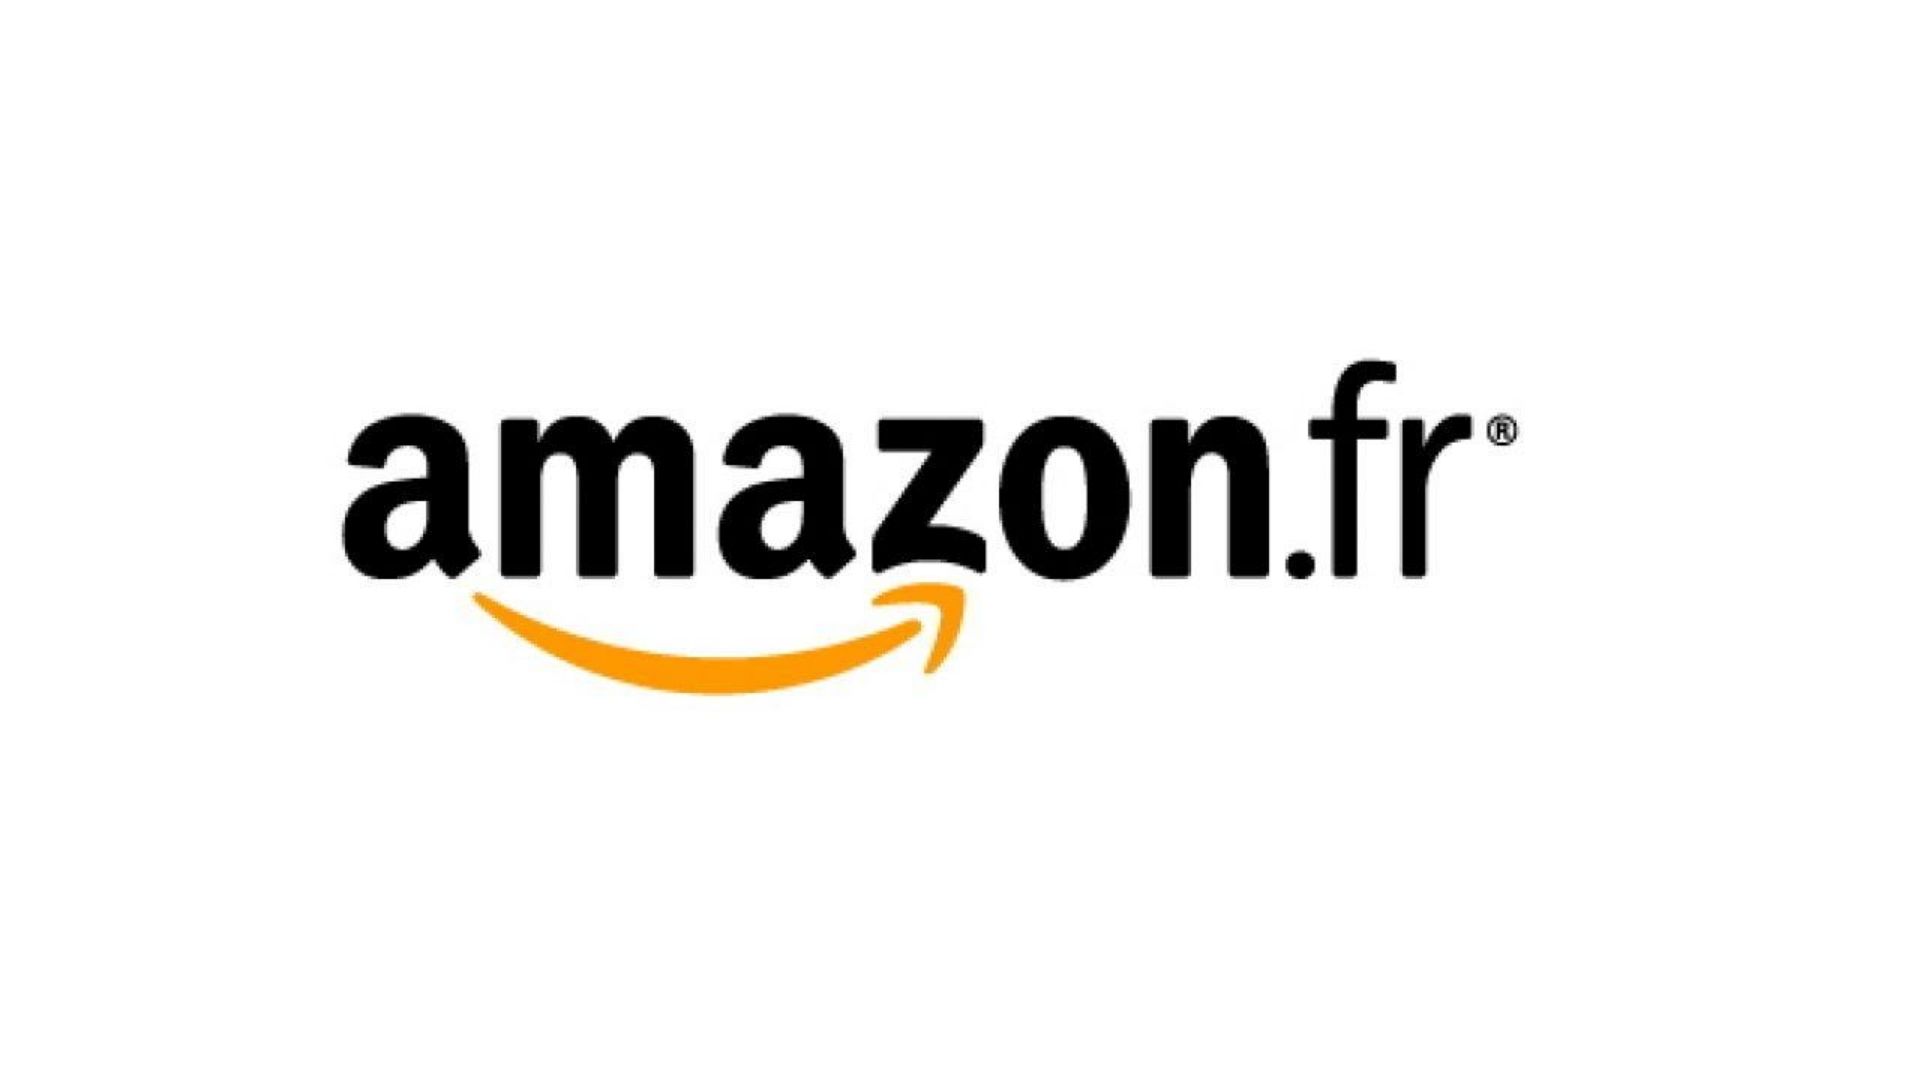 Jeff Bezos a bien l'intention de défendre le succès d'Amazon devant le Parlement